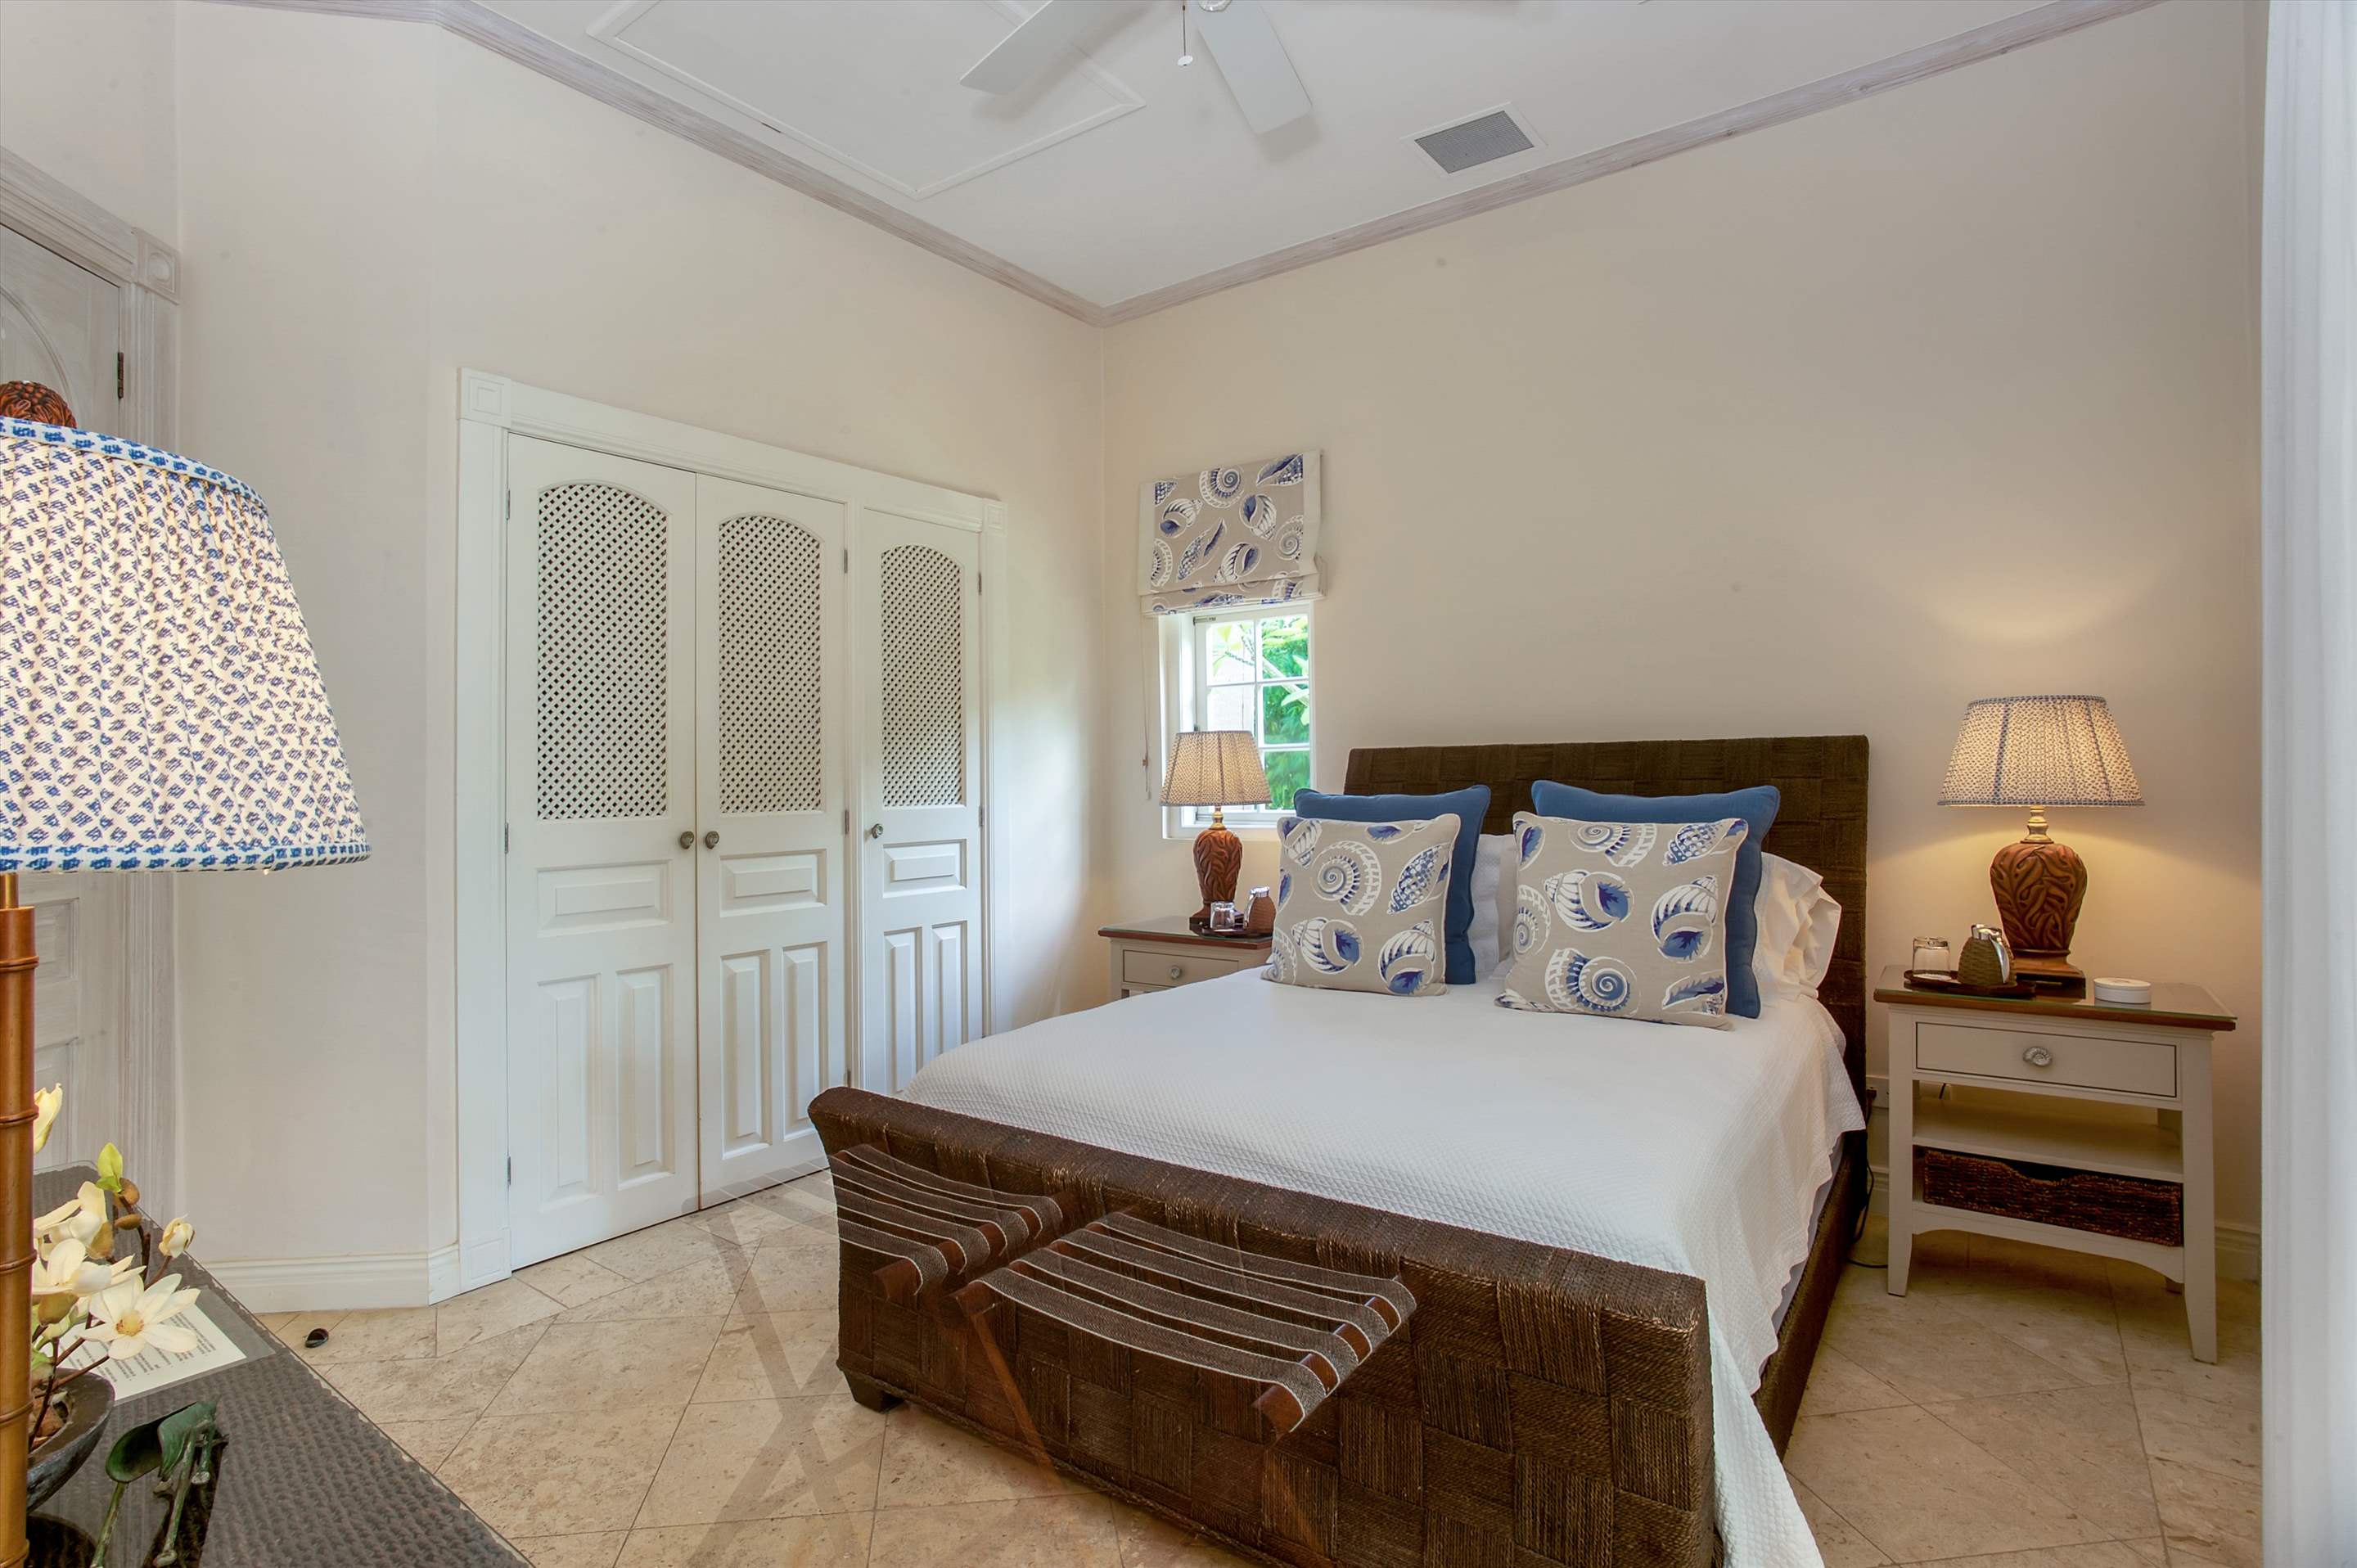 Plantation House, Royal Westmoreland, 4 bedroom, 4 bedroom villa in St. James & West Coast, Barbados Photo #12